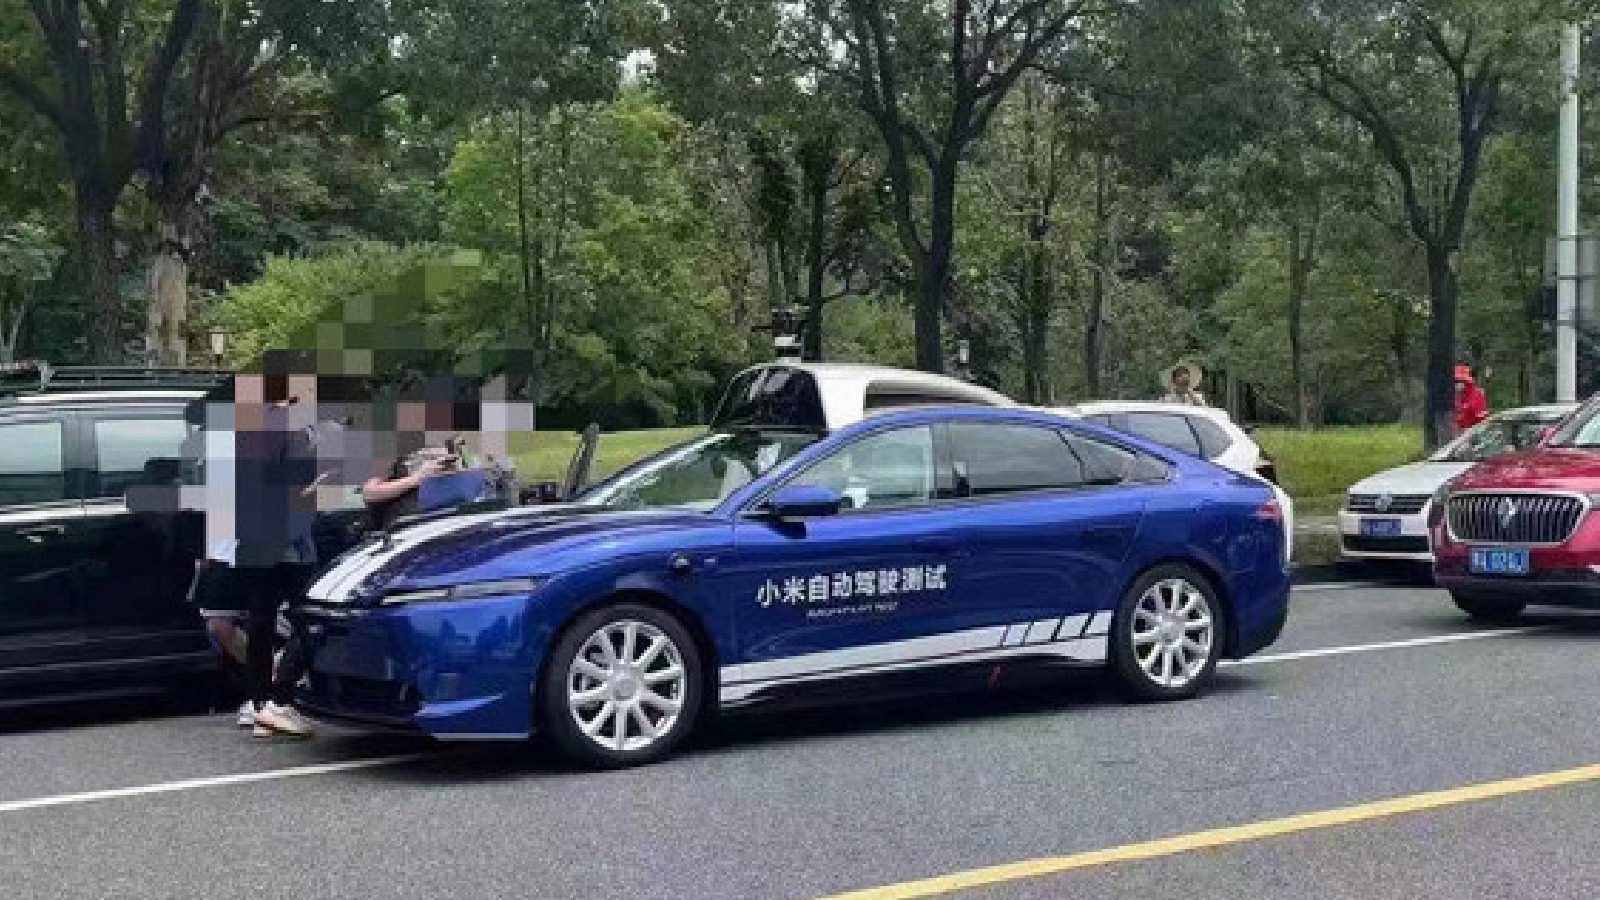 Xiaomi тестирует беспилотный автомобиль с технологией лидара